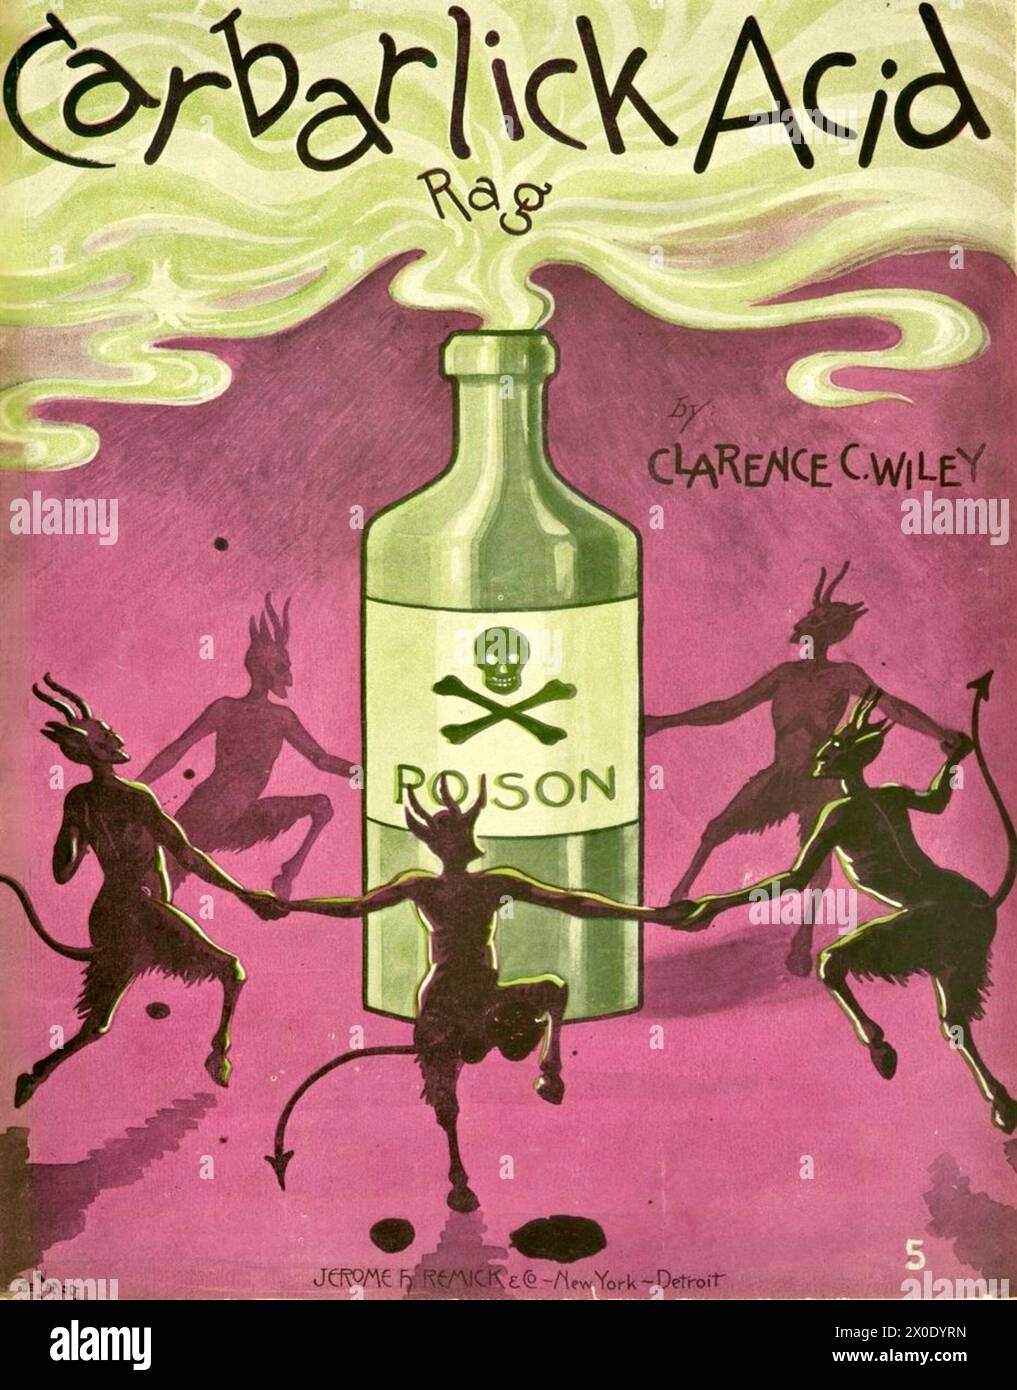 André de Takacs (Ungarisch-amerikanischer Künstler) - Carbarlick Acid Rag - 1904 - Cover mit Teufeln, die um eine Flasche Gift tanzen. Stockfoto